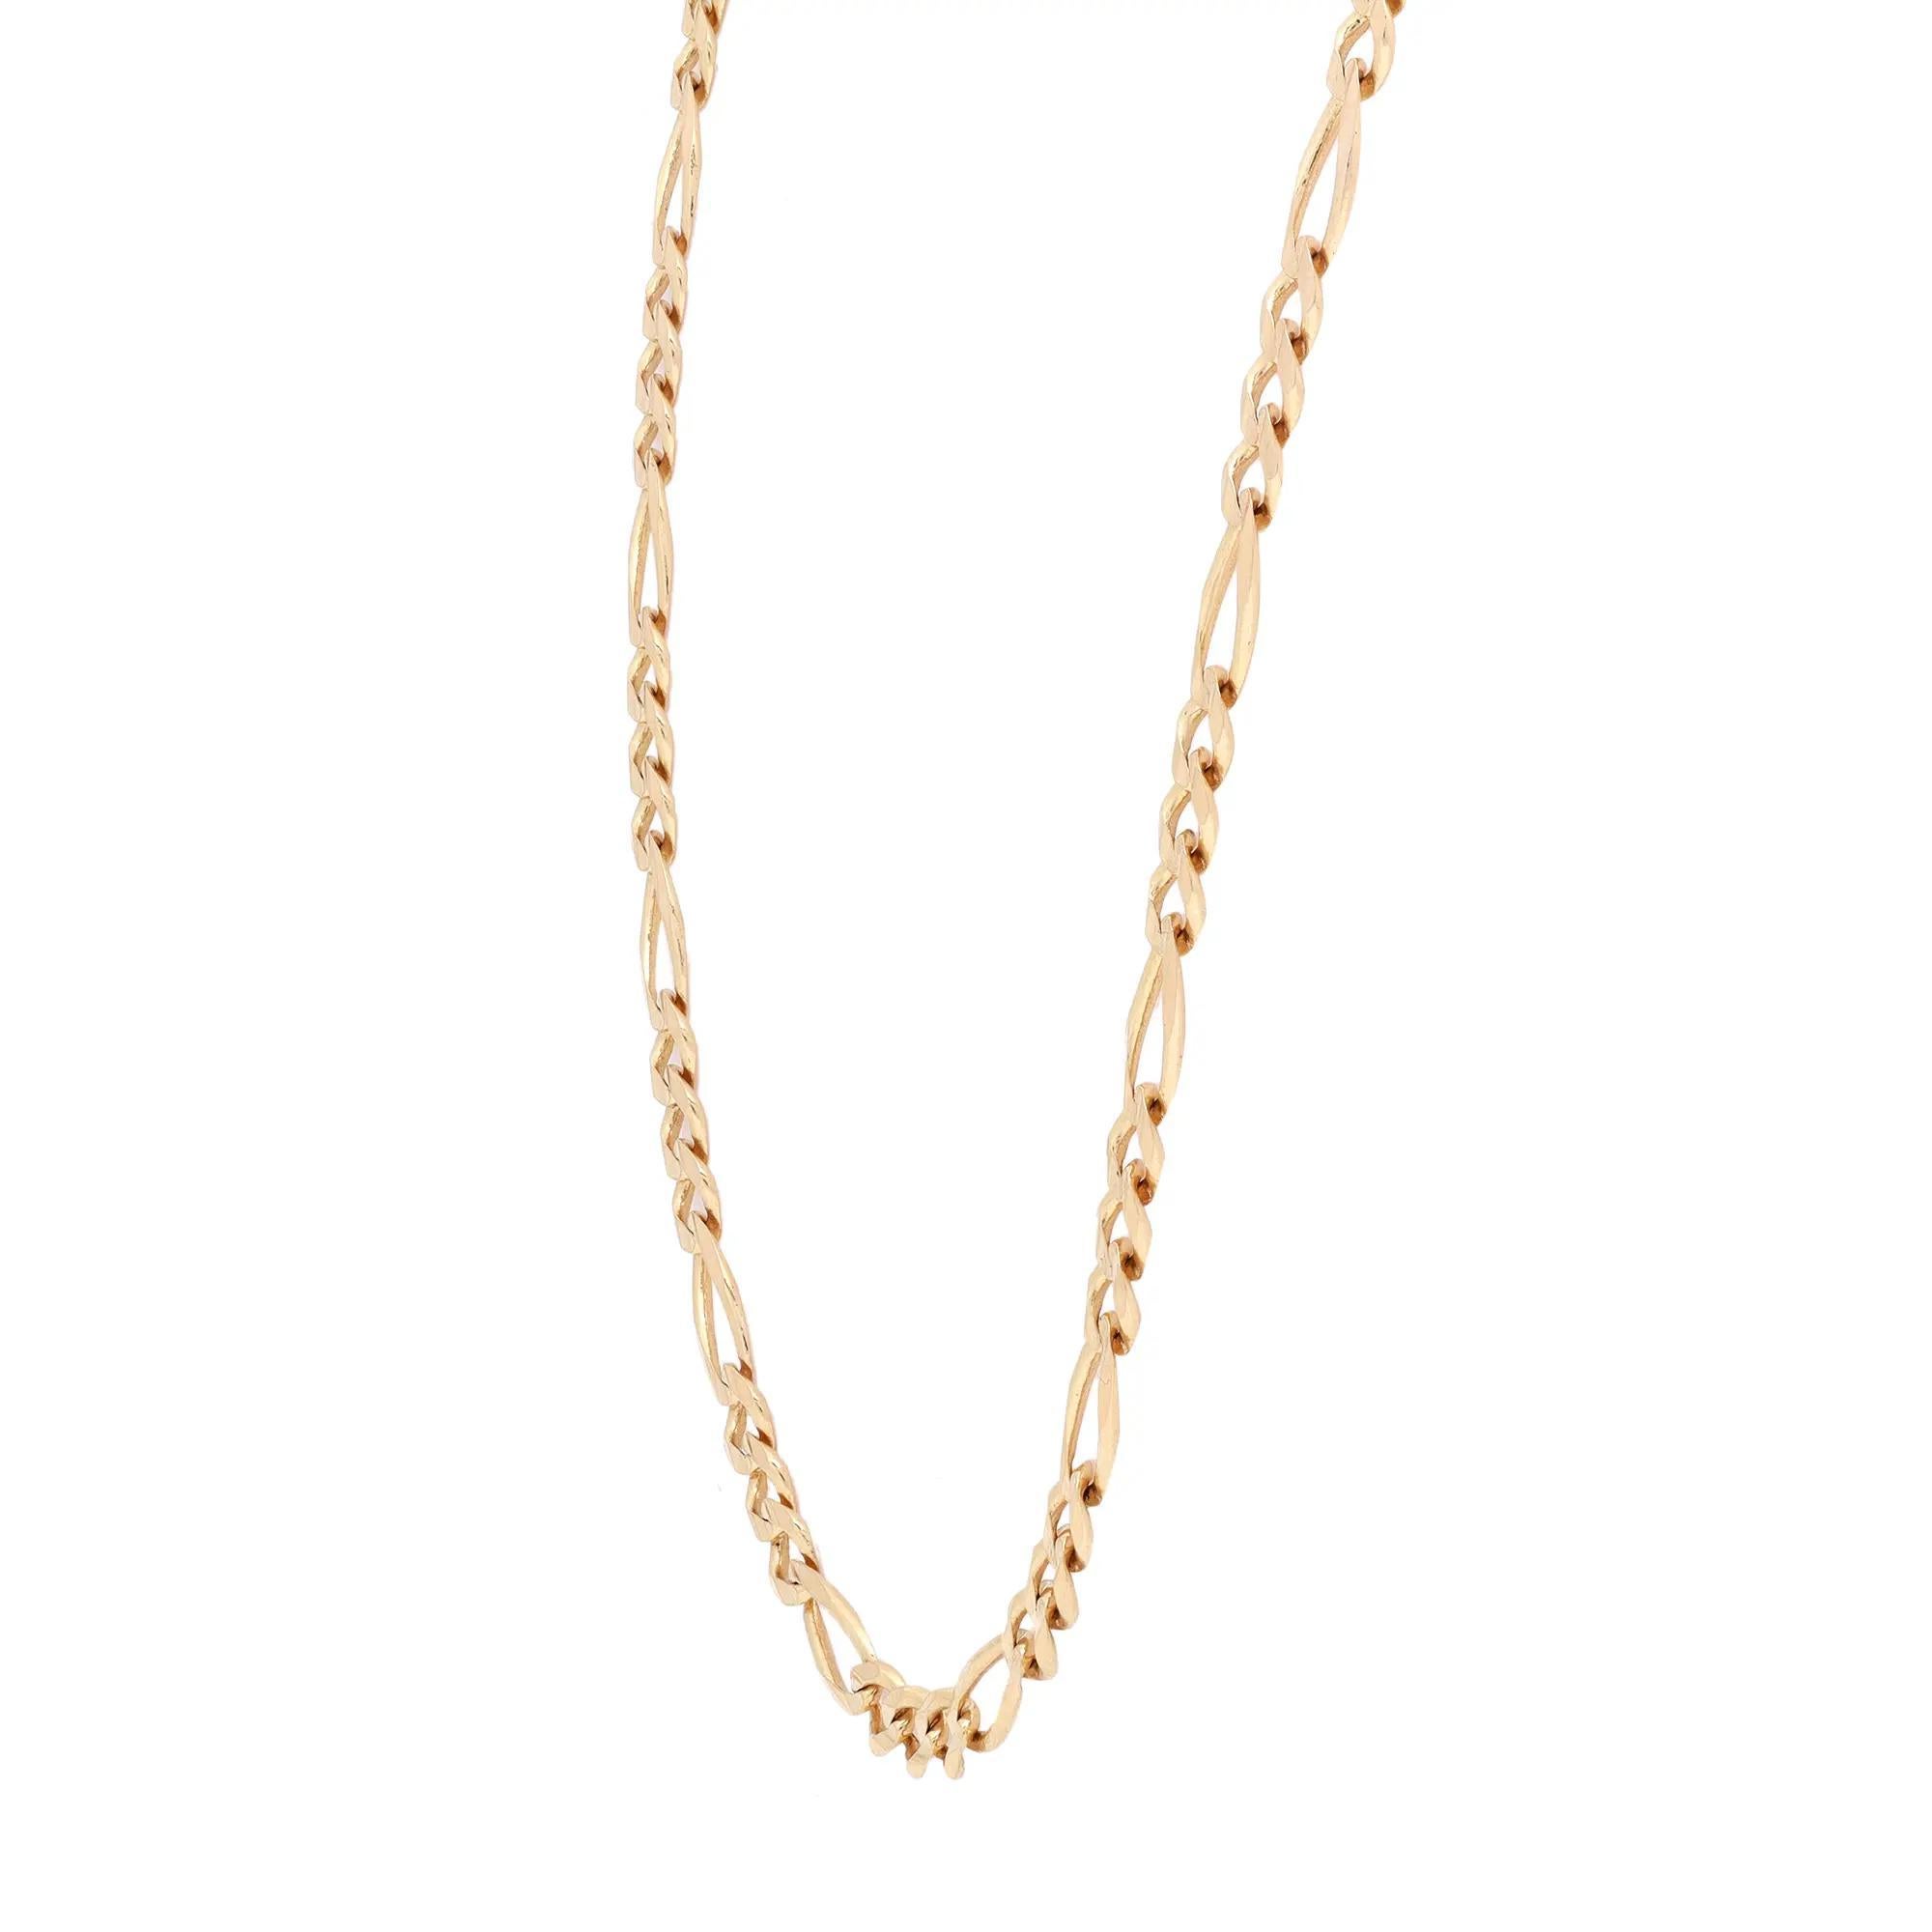 Zeigen Sie Ihren klassischen Sinn für Stil mit dieser massiven Unisex-Halskette von Figaro. Gefertigt aus glänzendem 14-karätigem Gelbgold. Länge: 20 Zoll. Breite: 4,05 mm Gewicht: 11,32 g. Verschluss: Karabinerverschluss. Egal, ob Sie sie in